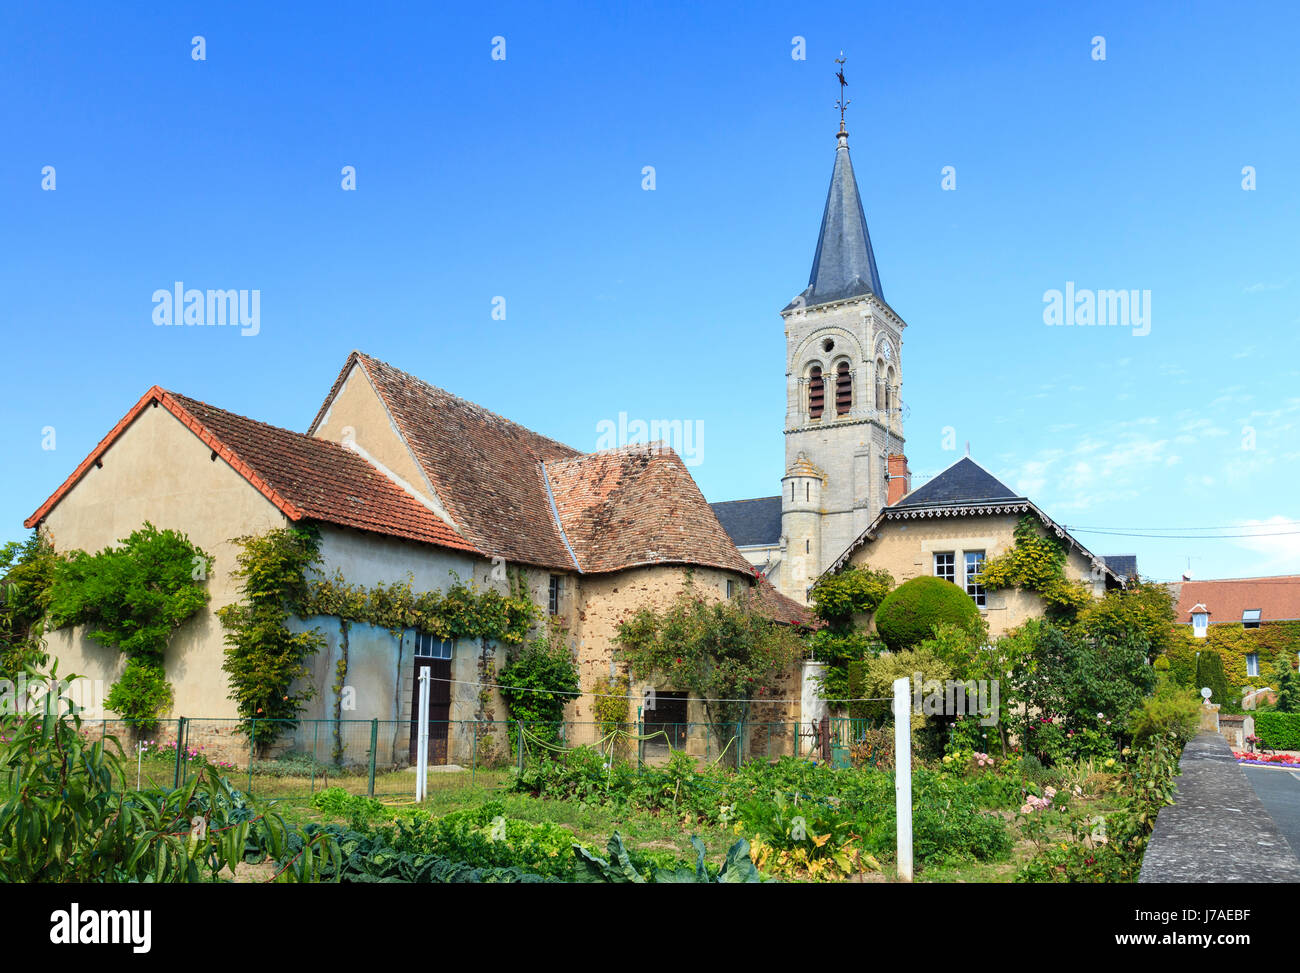 Francia, Indre, Sainte severe sur Indre, chiesa Sainte severe Foto Stock